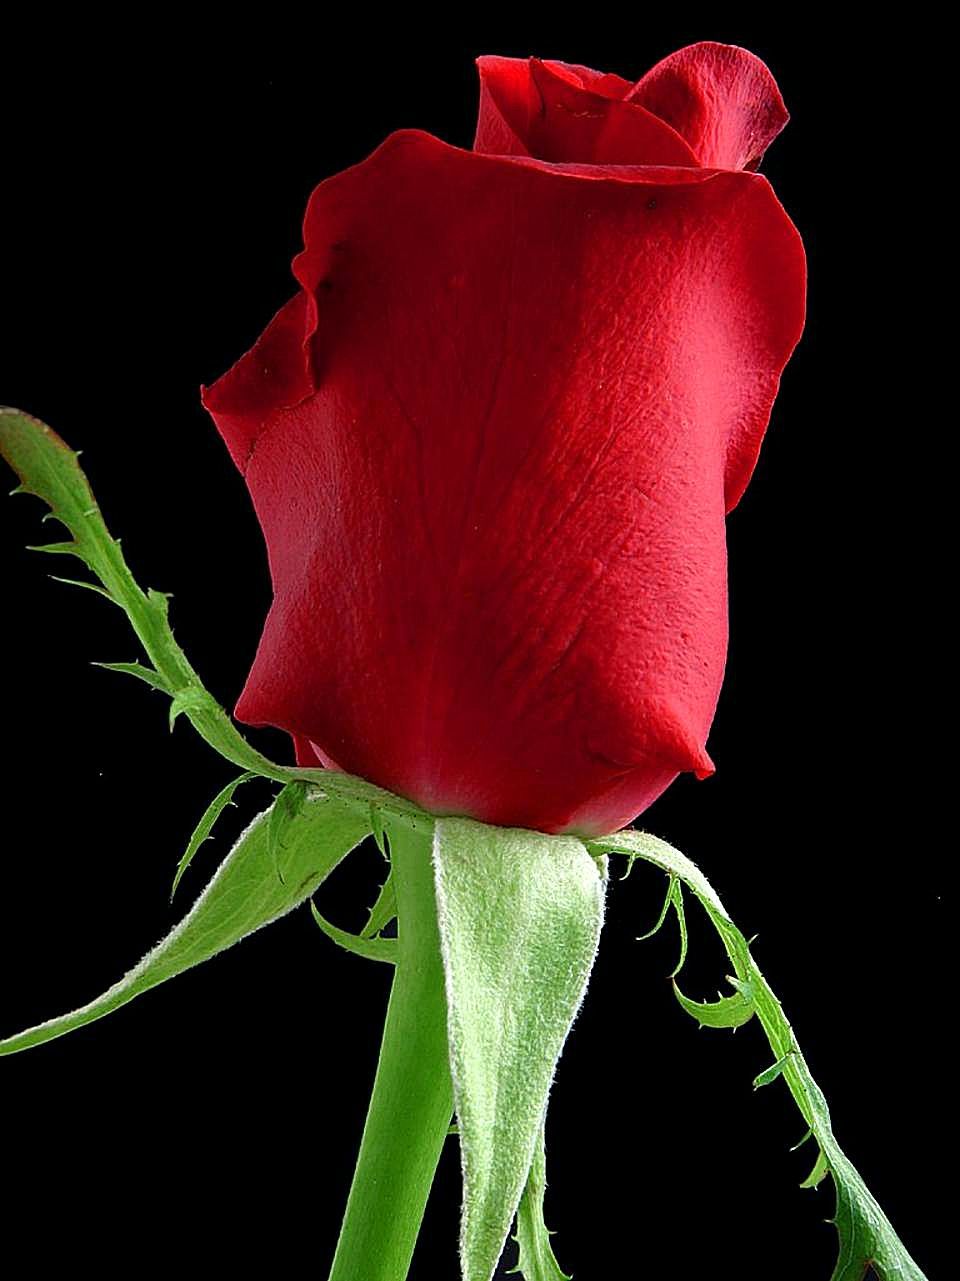 File:Rose flower black background.jpg - Wikimedia Commons